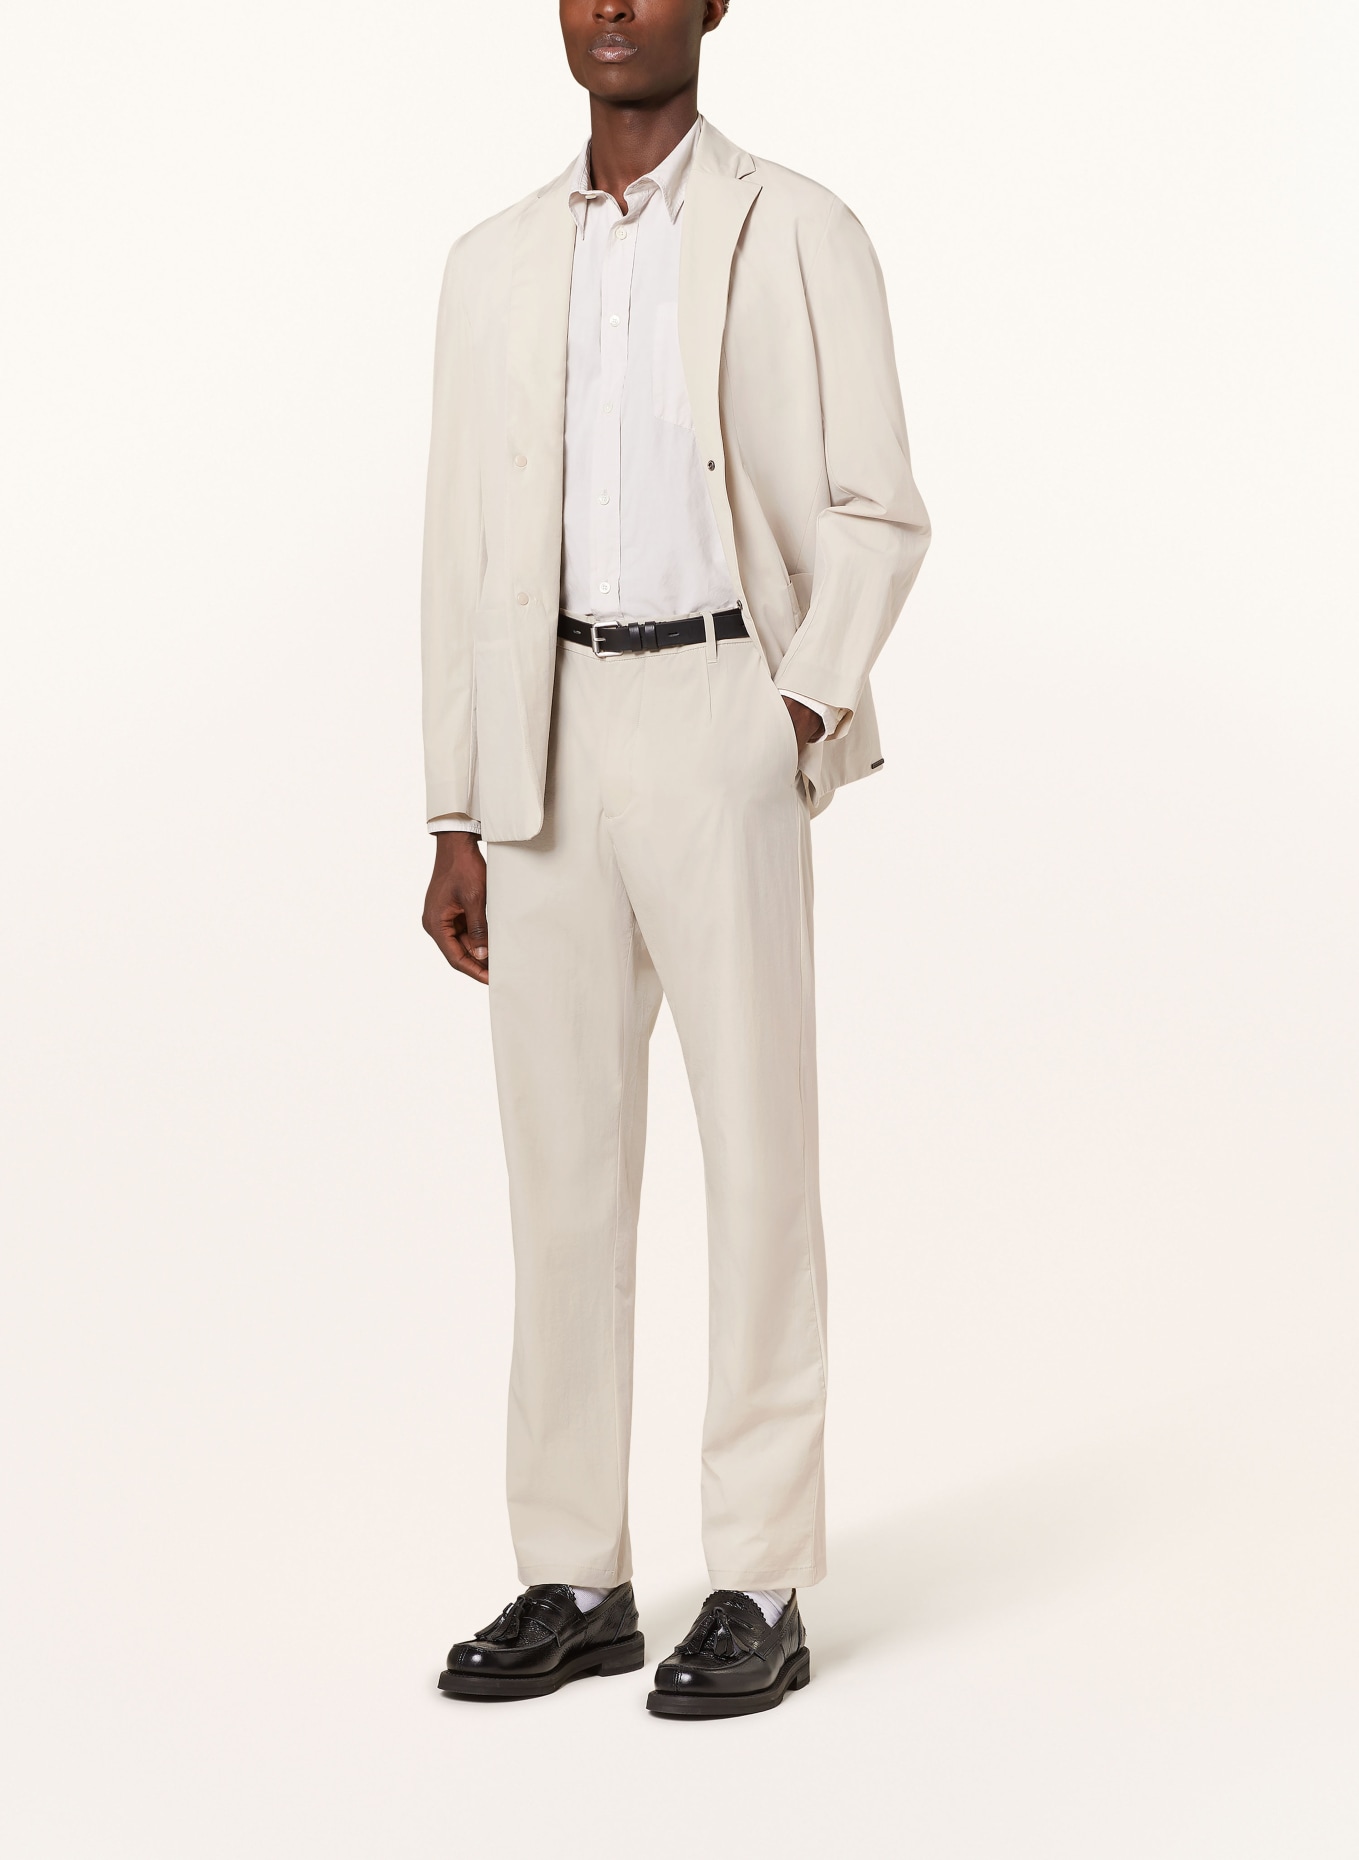 NORSE PROJECTS Suit trousers AAREN regular fit, Color: 0920 Light Khaki (Image 2)